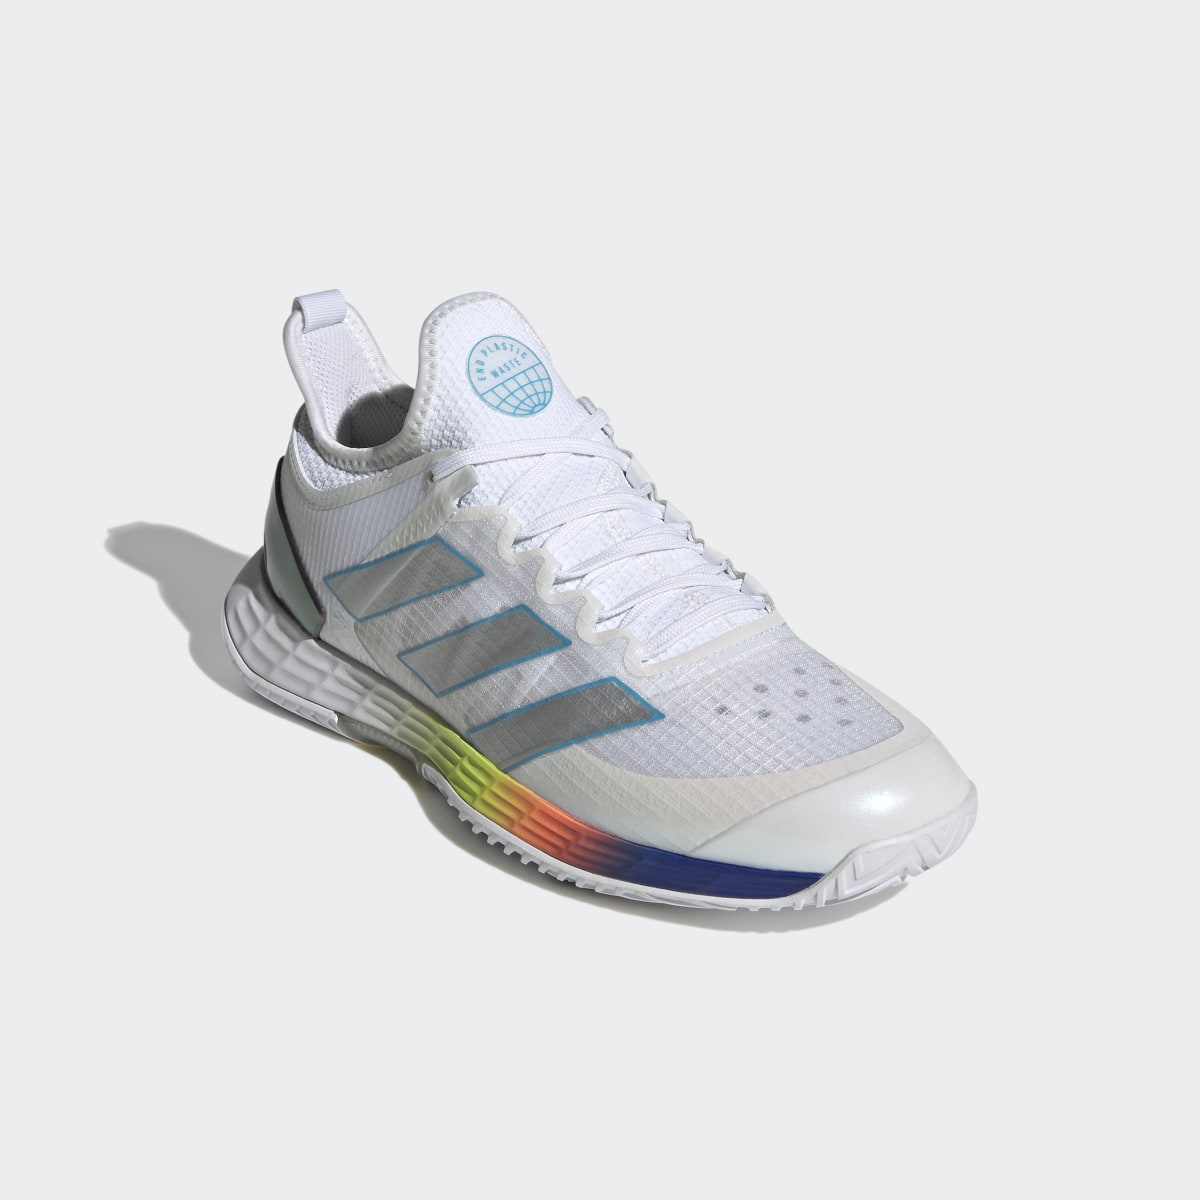 Adidas adizero Ubersonic 4 Tennis Shoes. 5